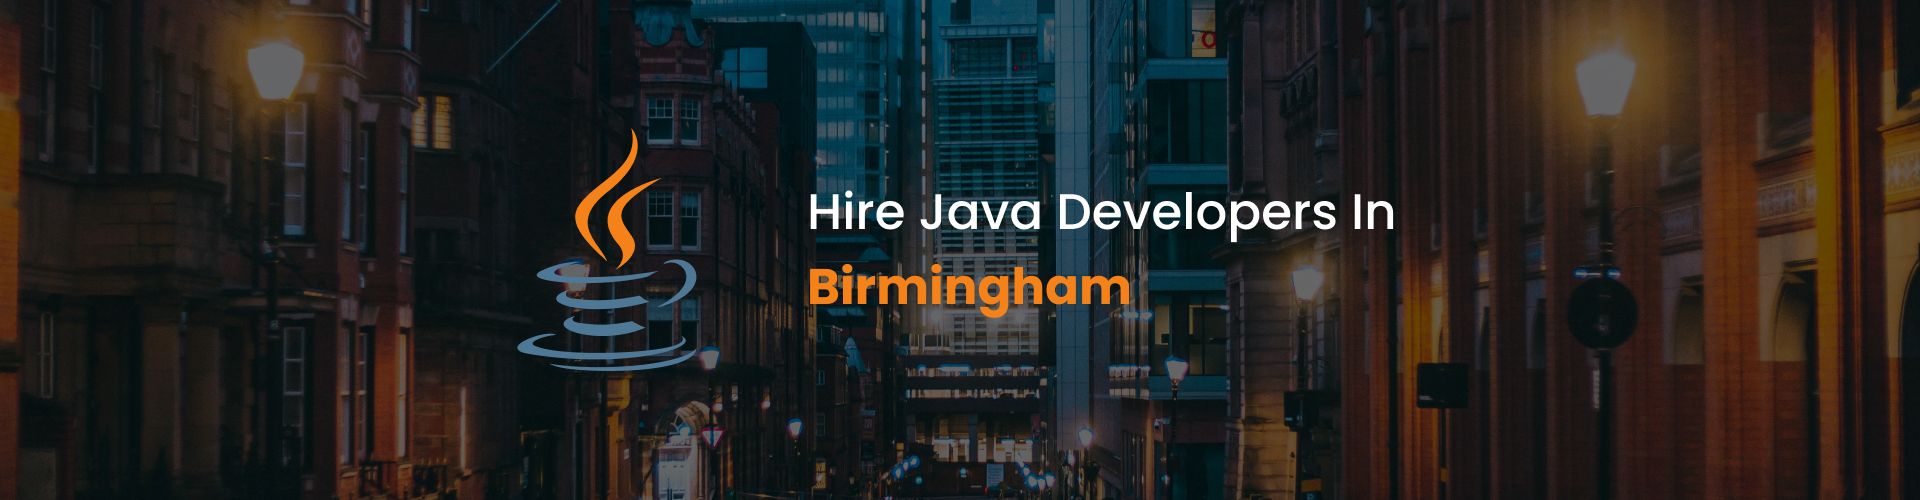 hire java developers in birmingham